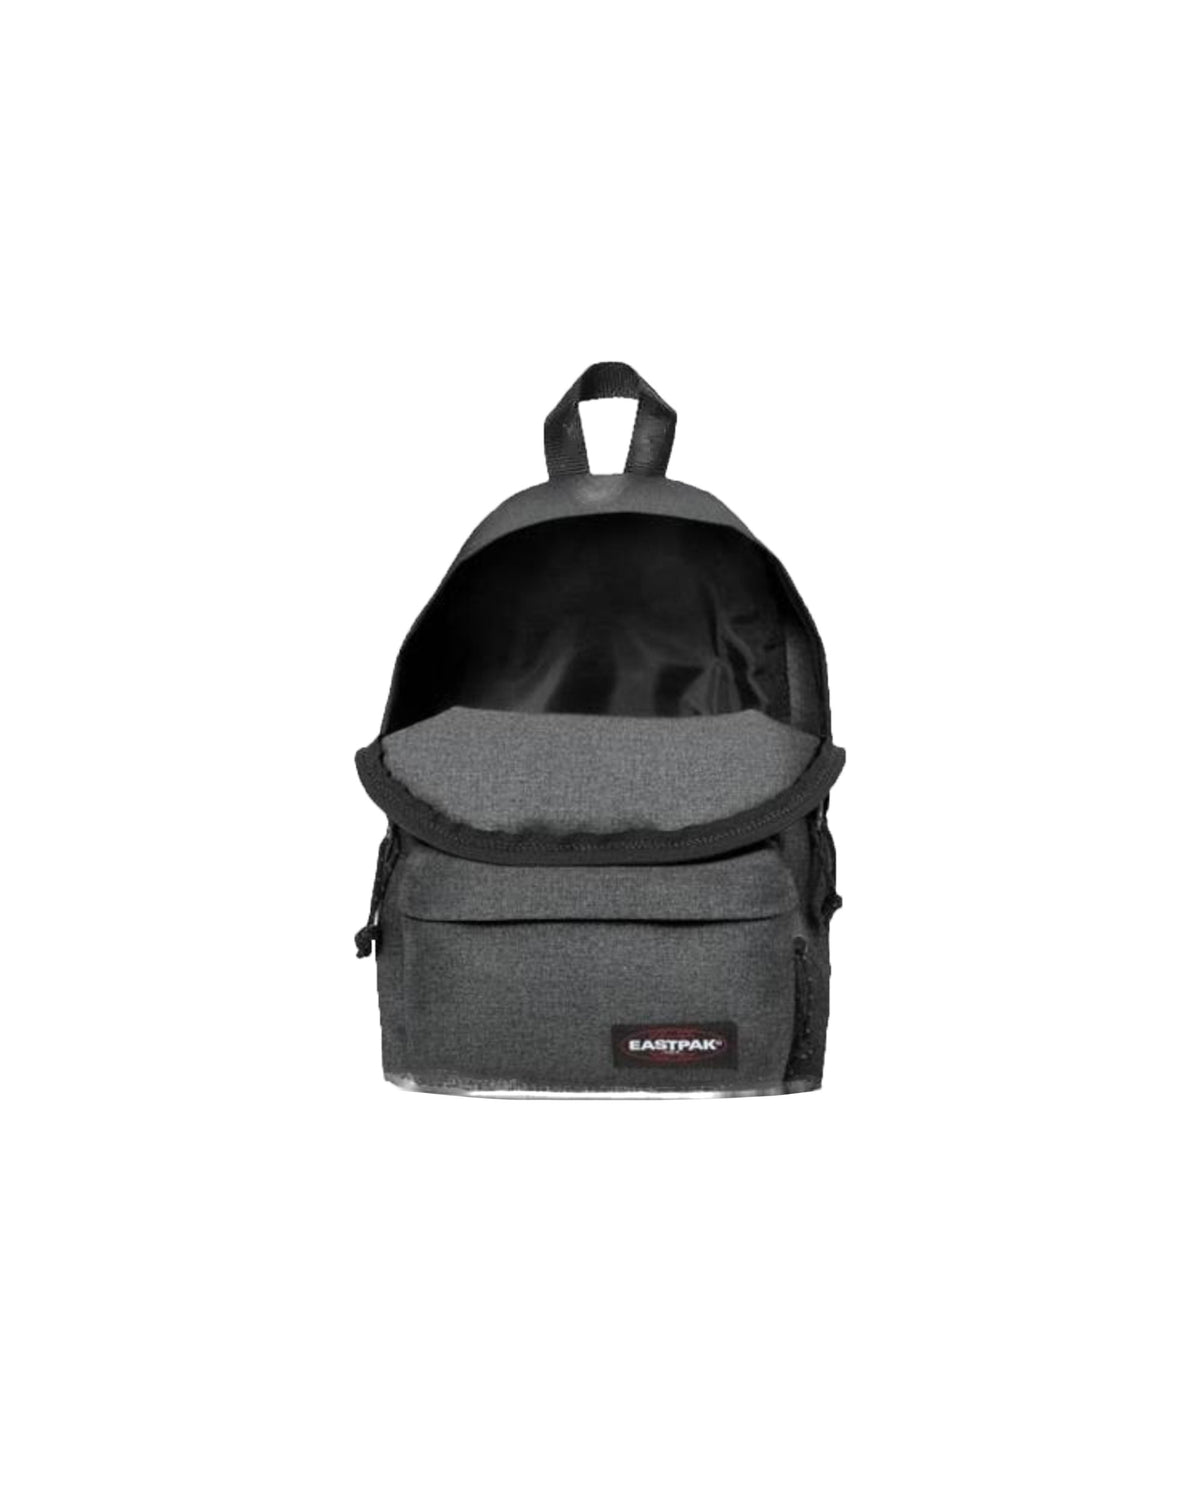 Mini Backpack Eastpak orbit black denim